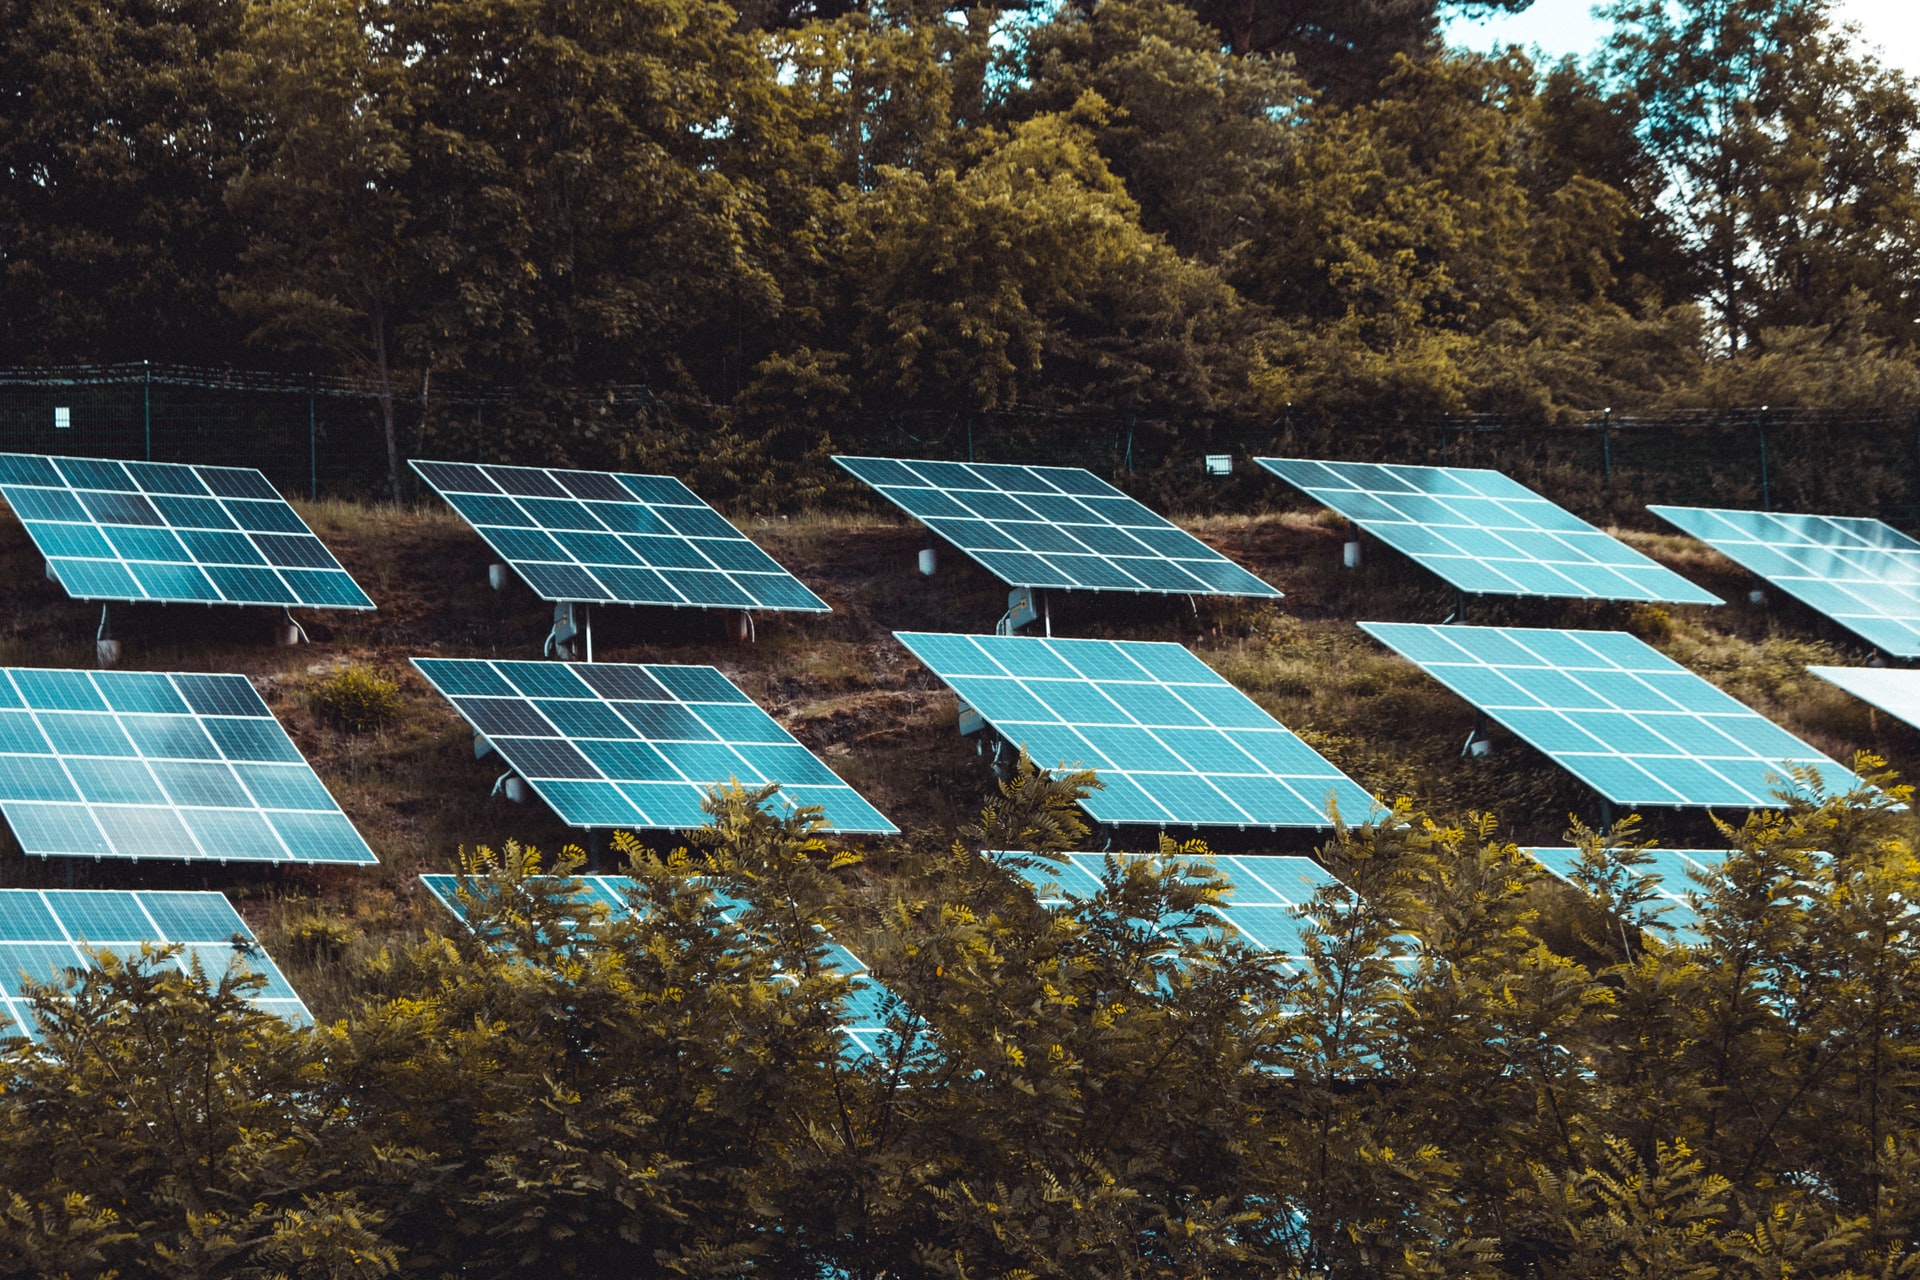 De nuevo, los paneles solares que generan una pequeña cantidad de electricidad por la noche podrían reducir la necesidad de baterías, y los costes de mantenimiento y sustitución que conllevan.